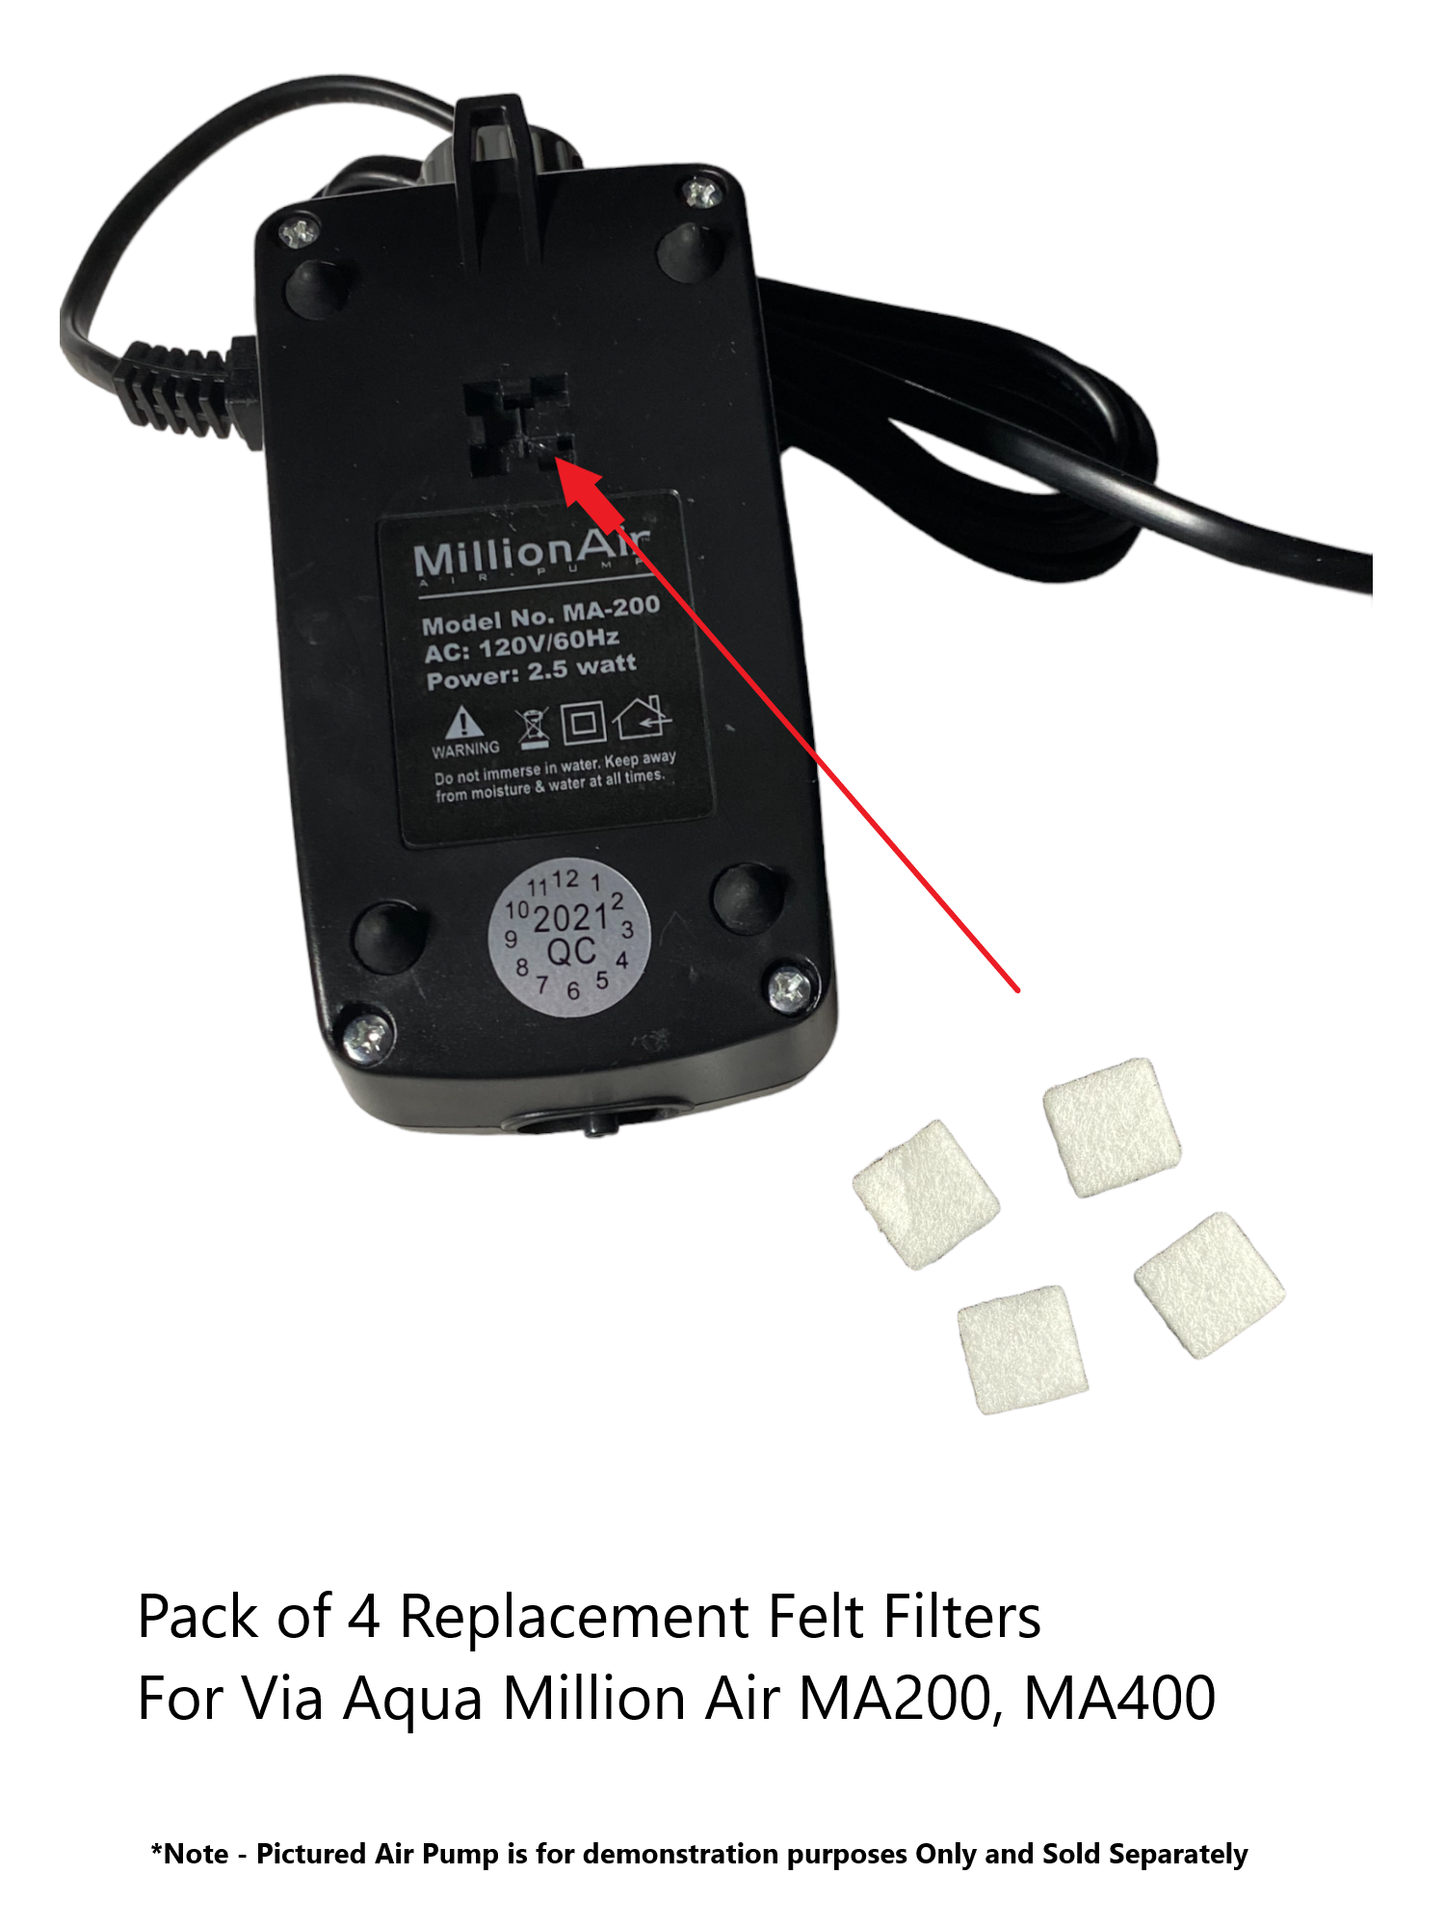 Via Aqua Million Air 200,400 Air Pump Air Filter Replacements